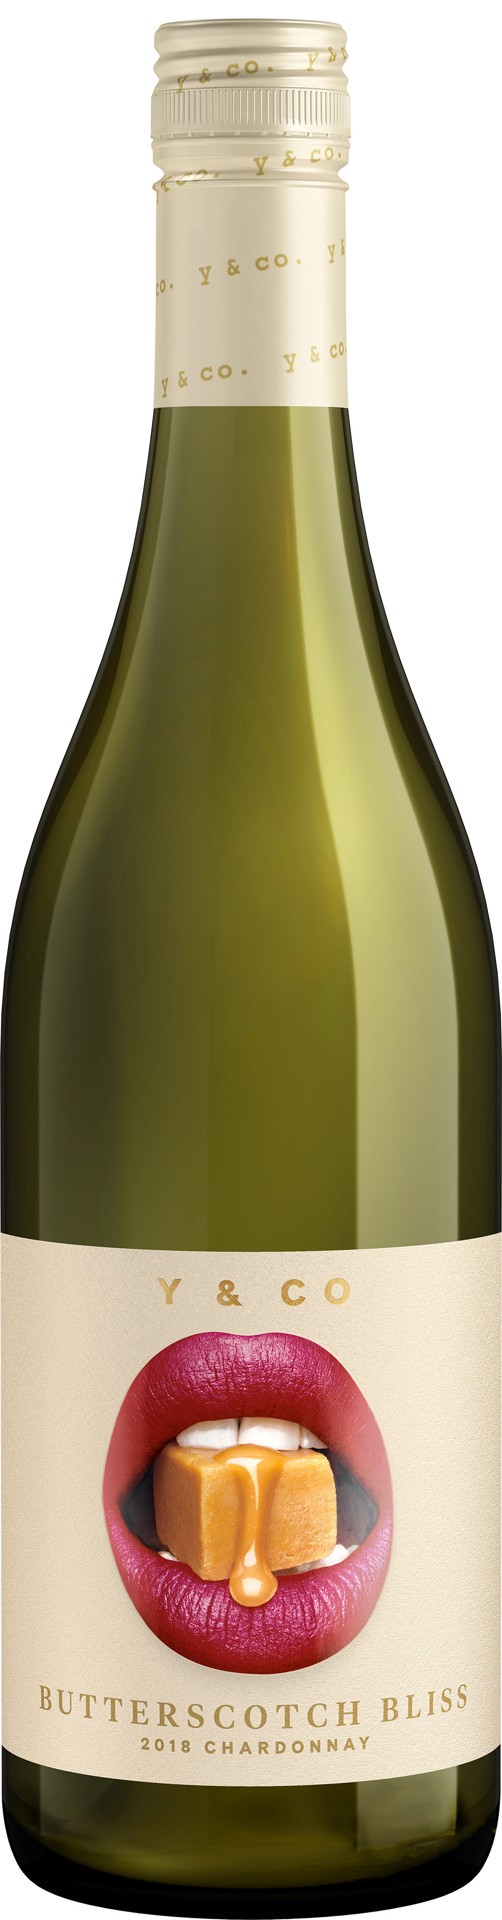 slide 1 of 6, Y & Co Butterscotch Bliss Chardonnay White Wine, 750 mL Bottle, 25.36 fl oz